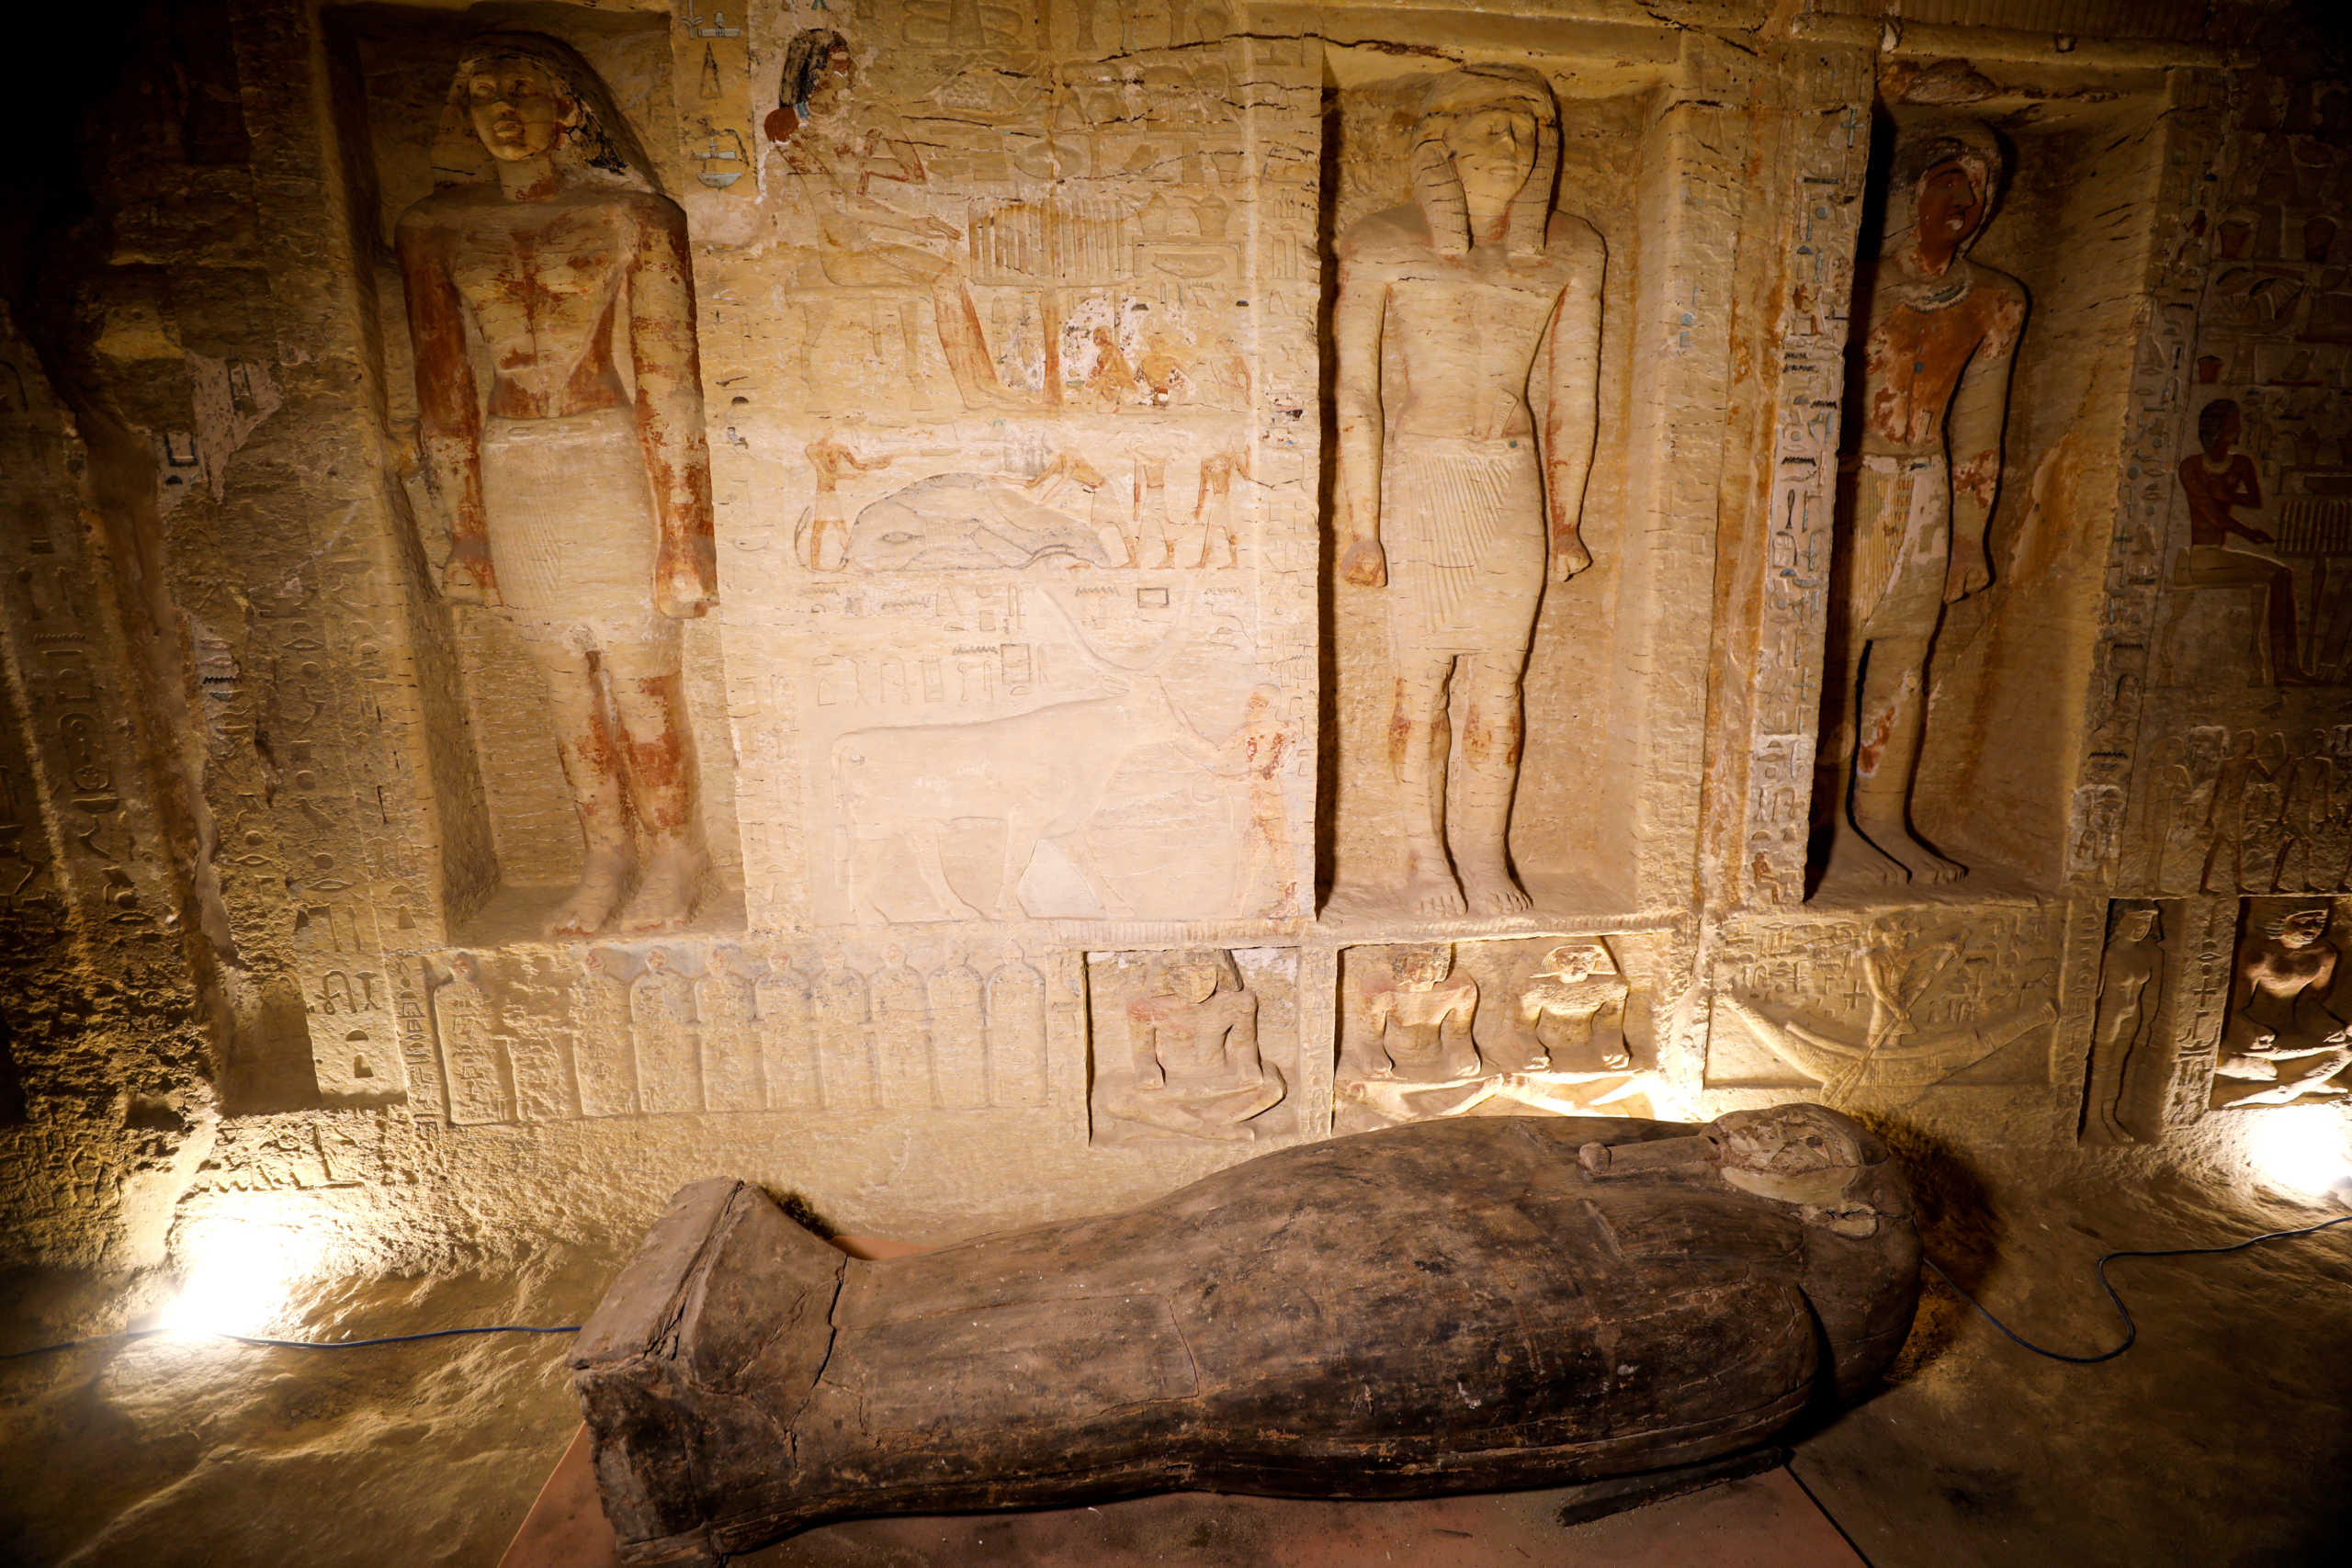 Αίγυπτος: Δέος! Ανακαλύφθηκαν 59 σαρκοφάγοι στη Νεκρόπολη της Σακκάρα (pics)  